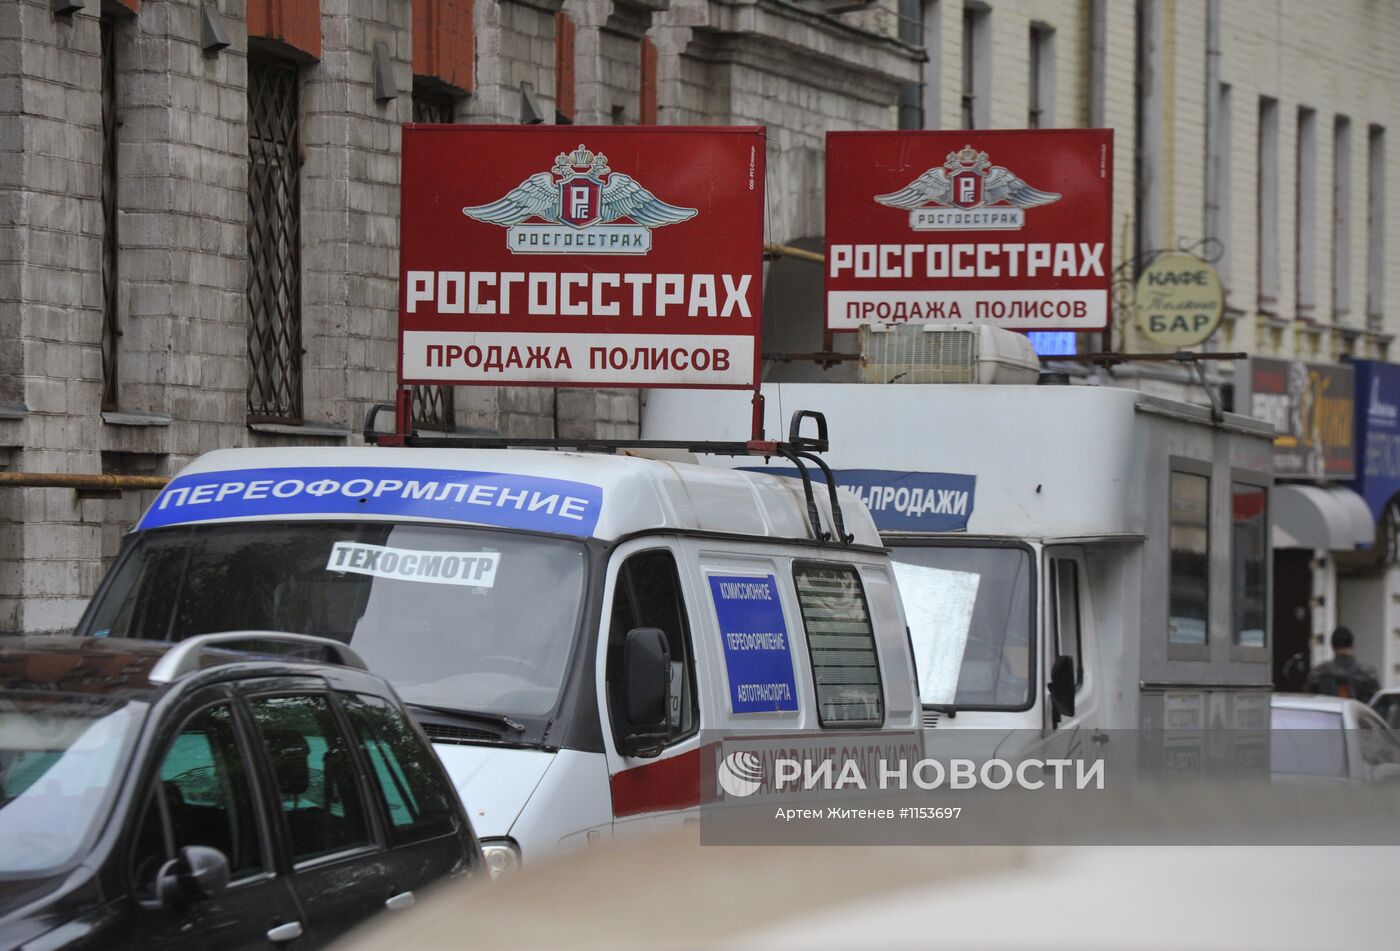 Пункты страхования автомобилей в Москве